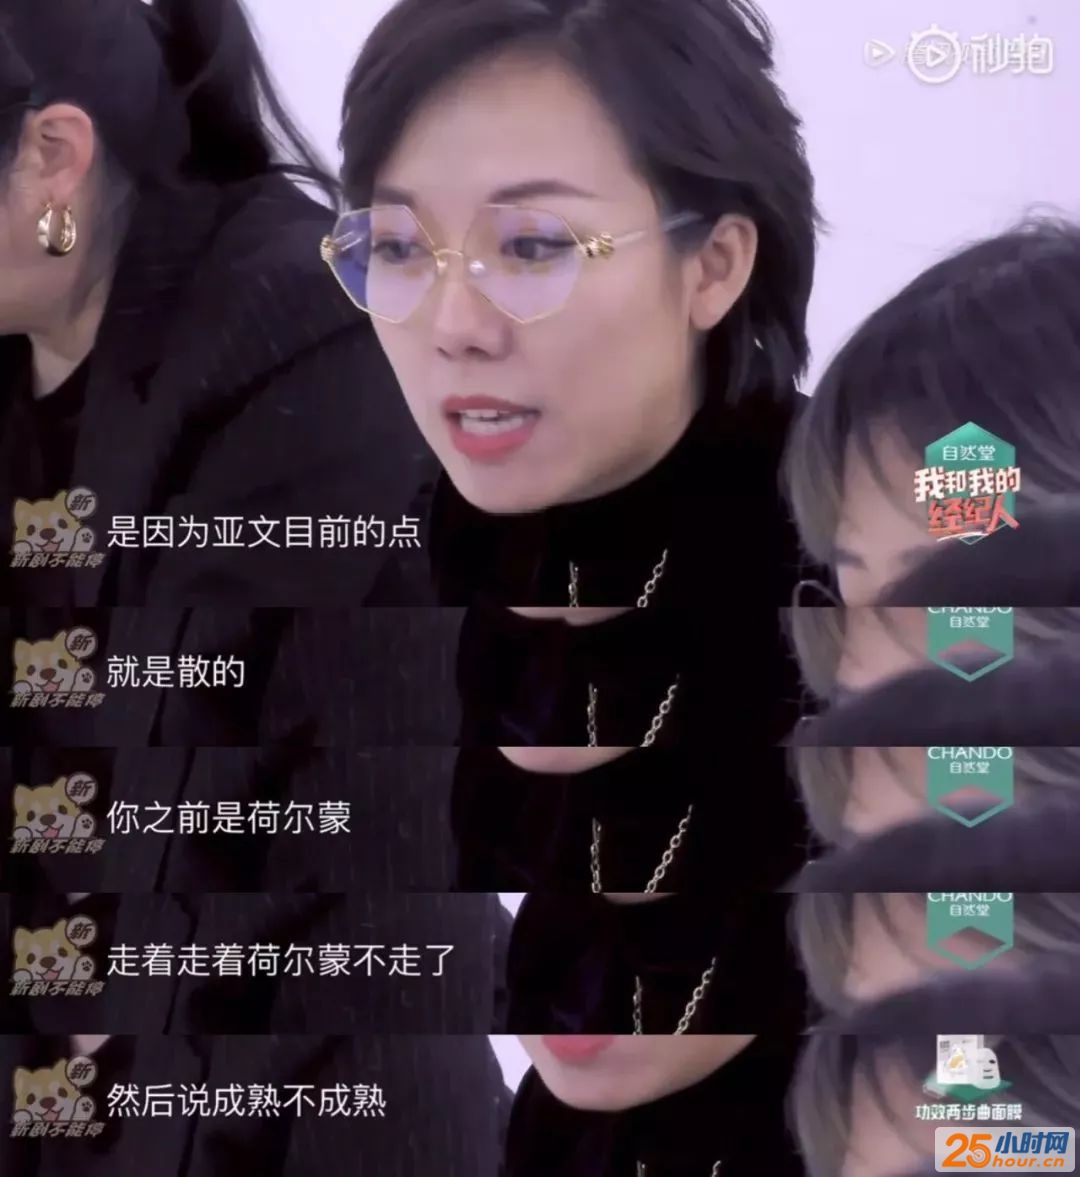 杨天真展示了她的业务能力，网友让她看到了大家的P图能力